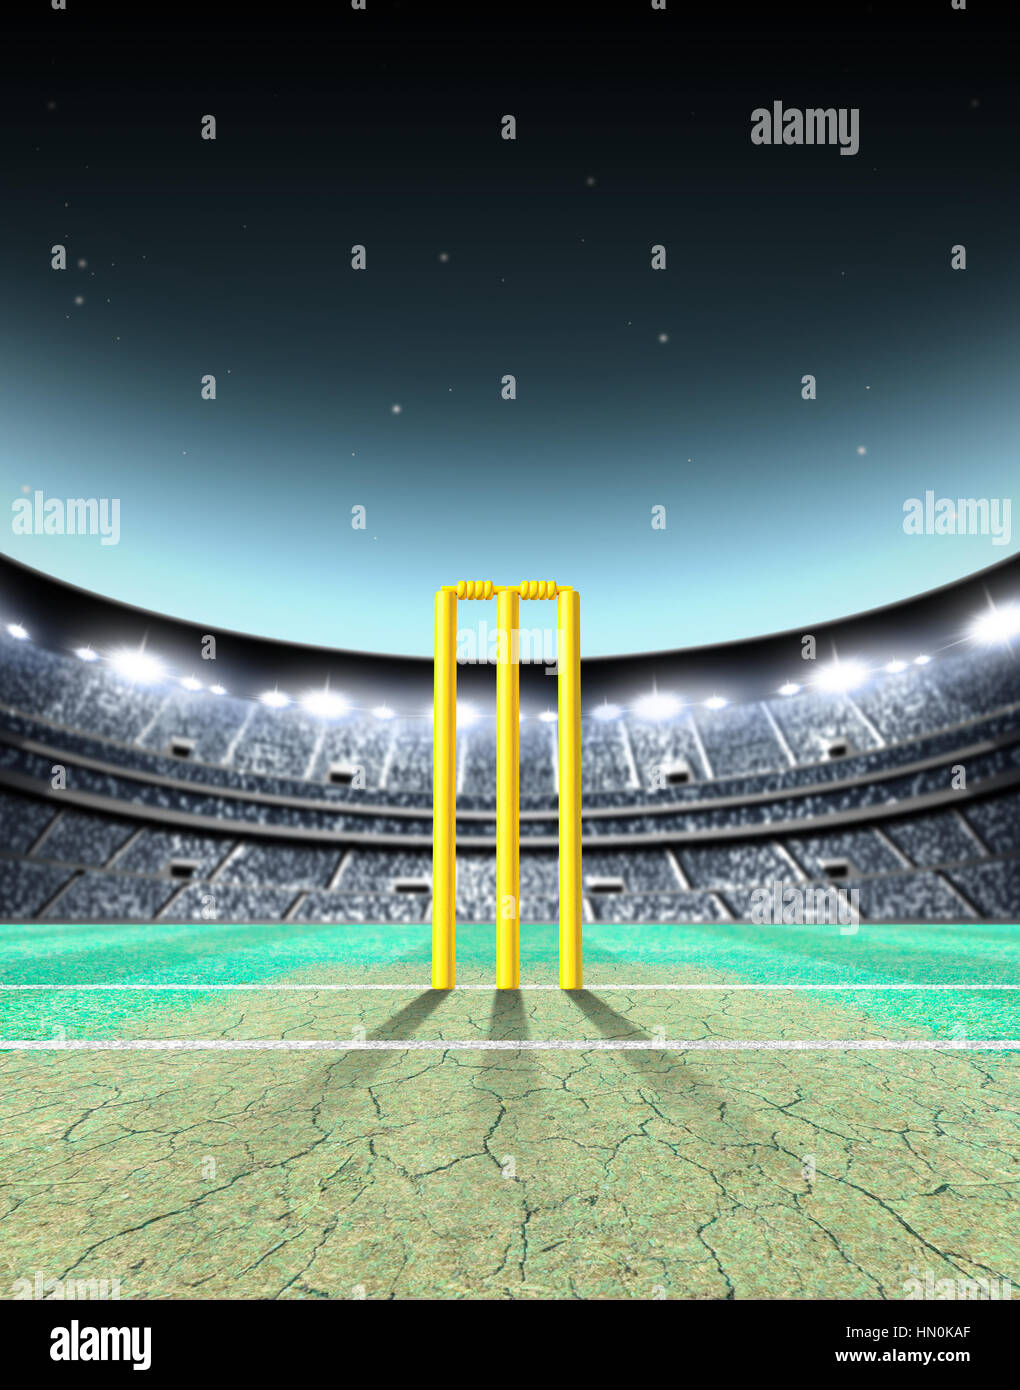 Eine generische sitzenden Cricket-Stadion mit gerissenen Tonhöhe und gelbe Wickets auf einem grünen Rasen nachts beleuchteten Flutlicht - 3D render Stockfoto